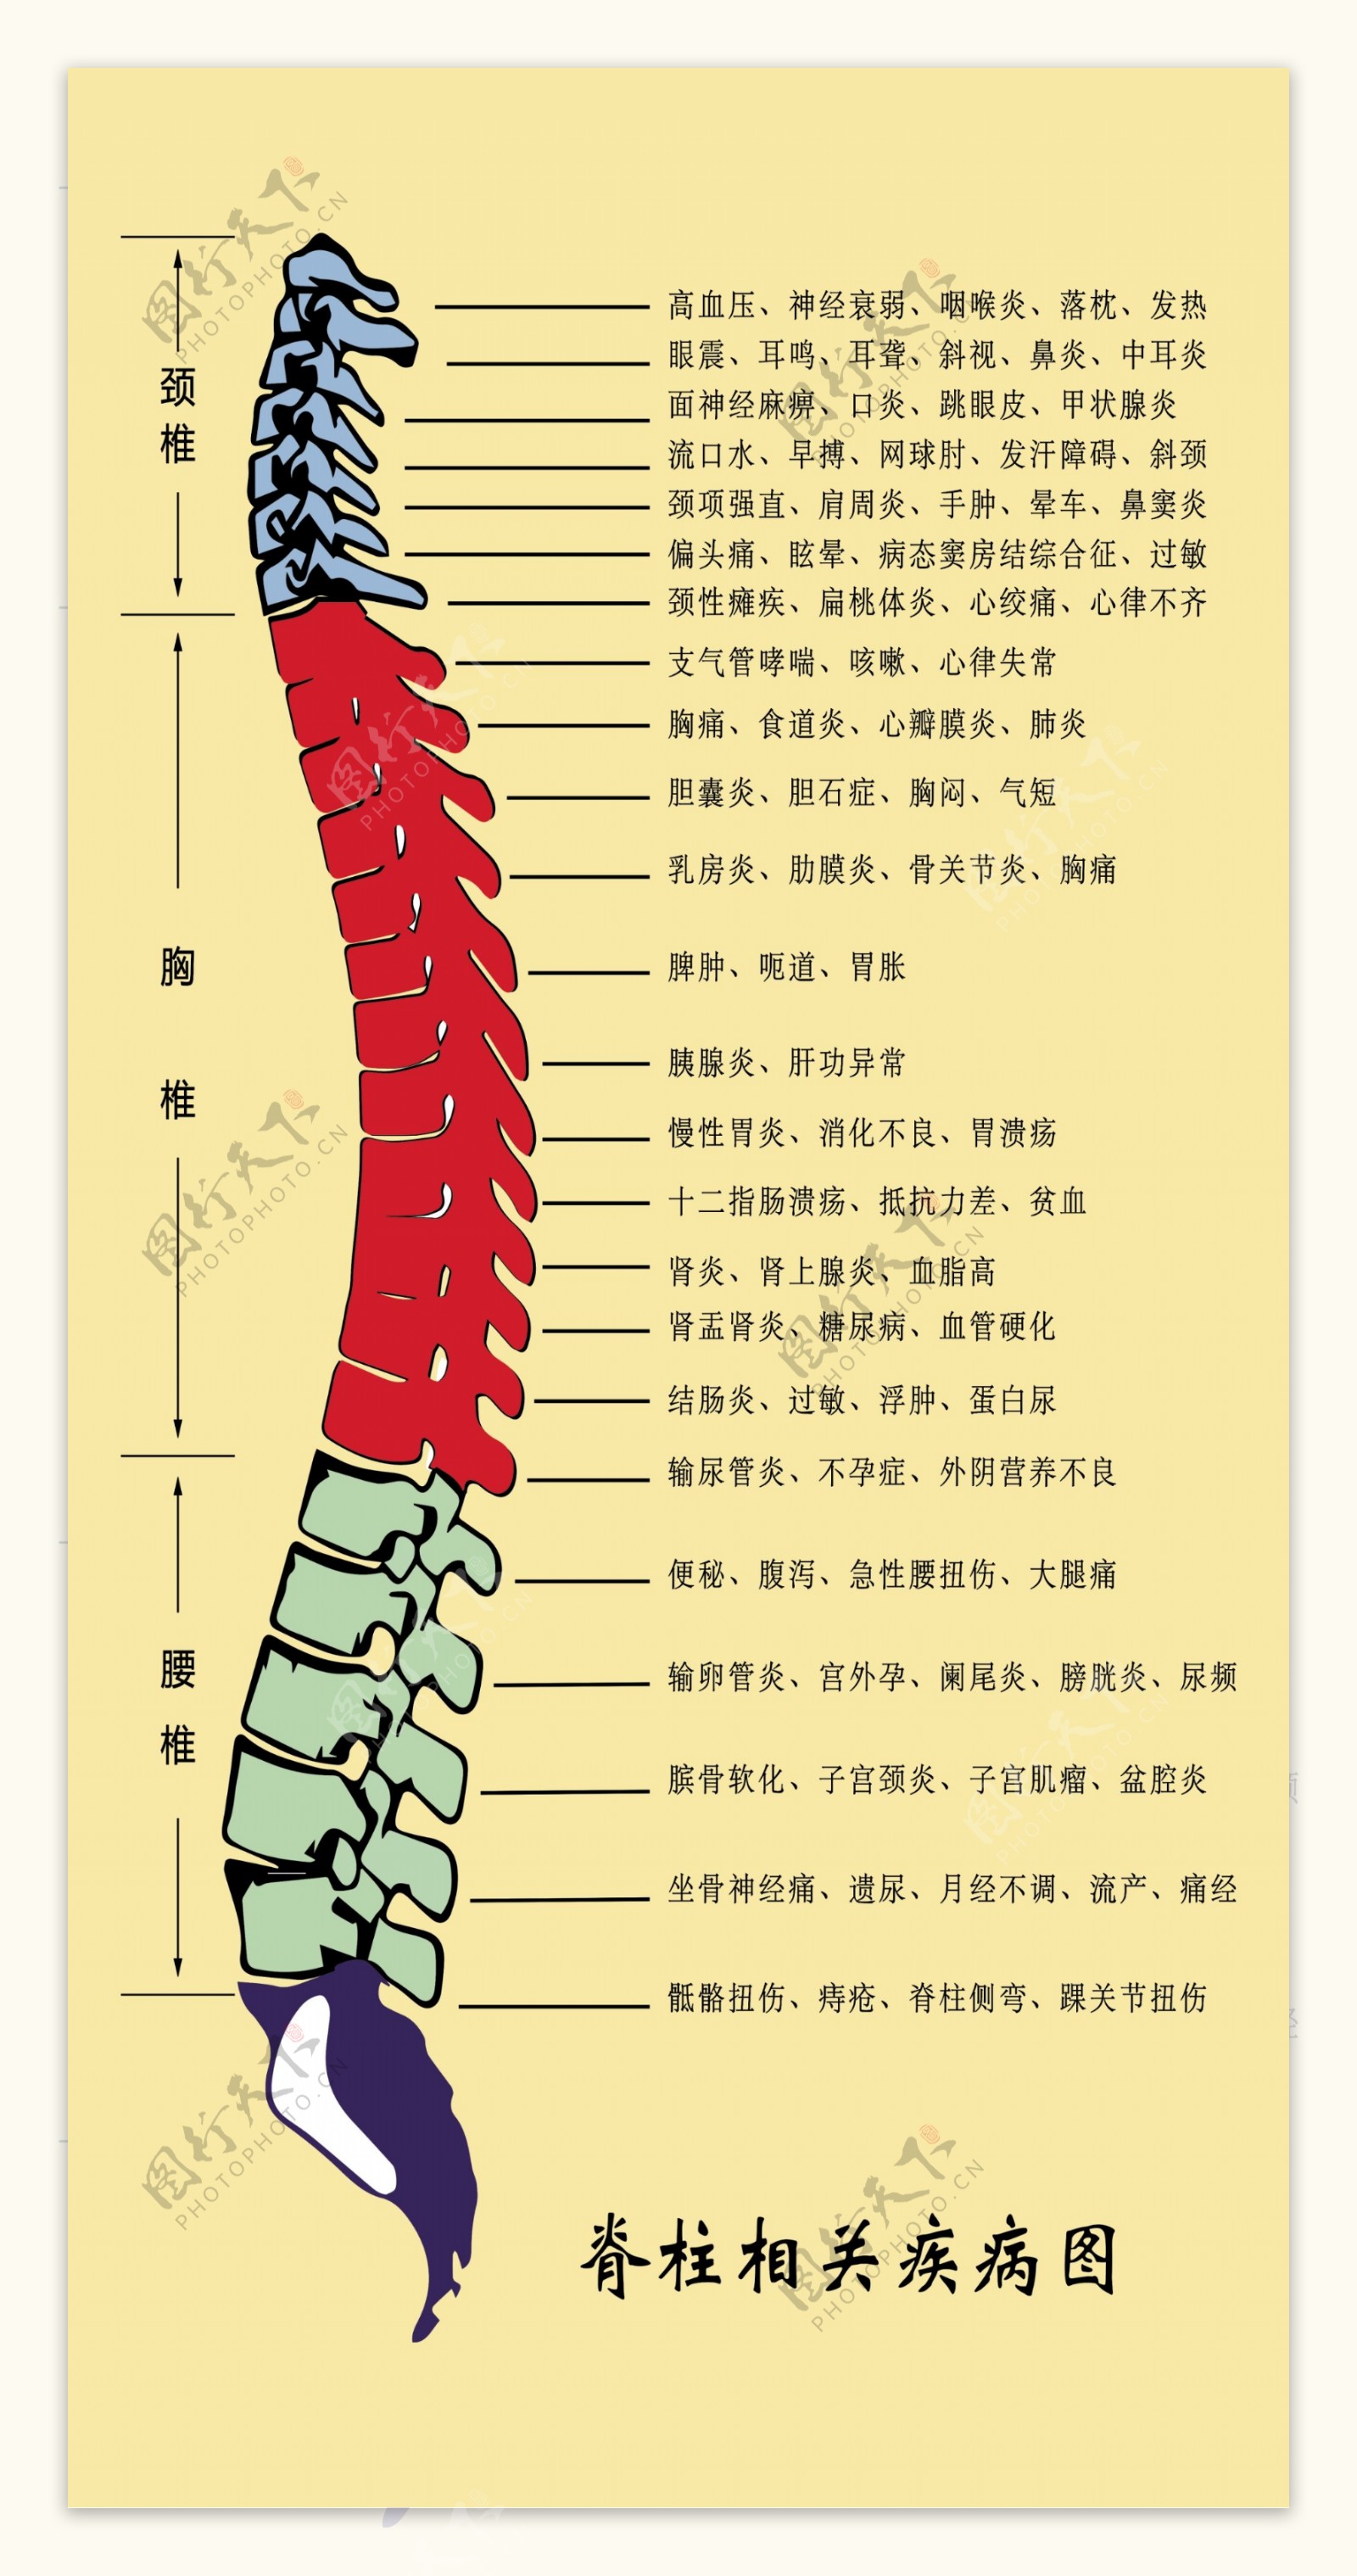 脊柱相关疾病图